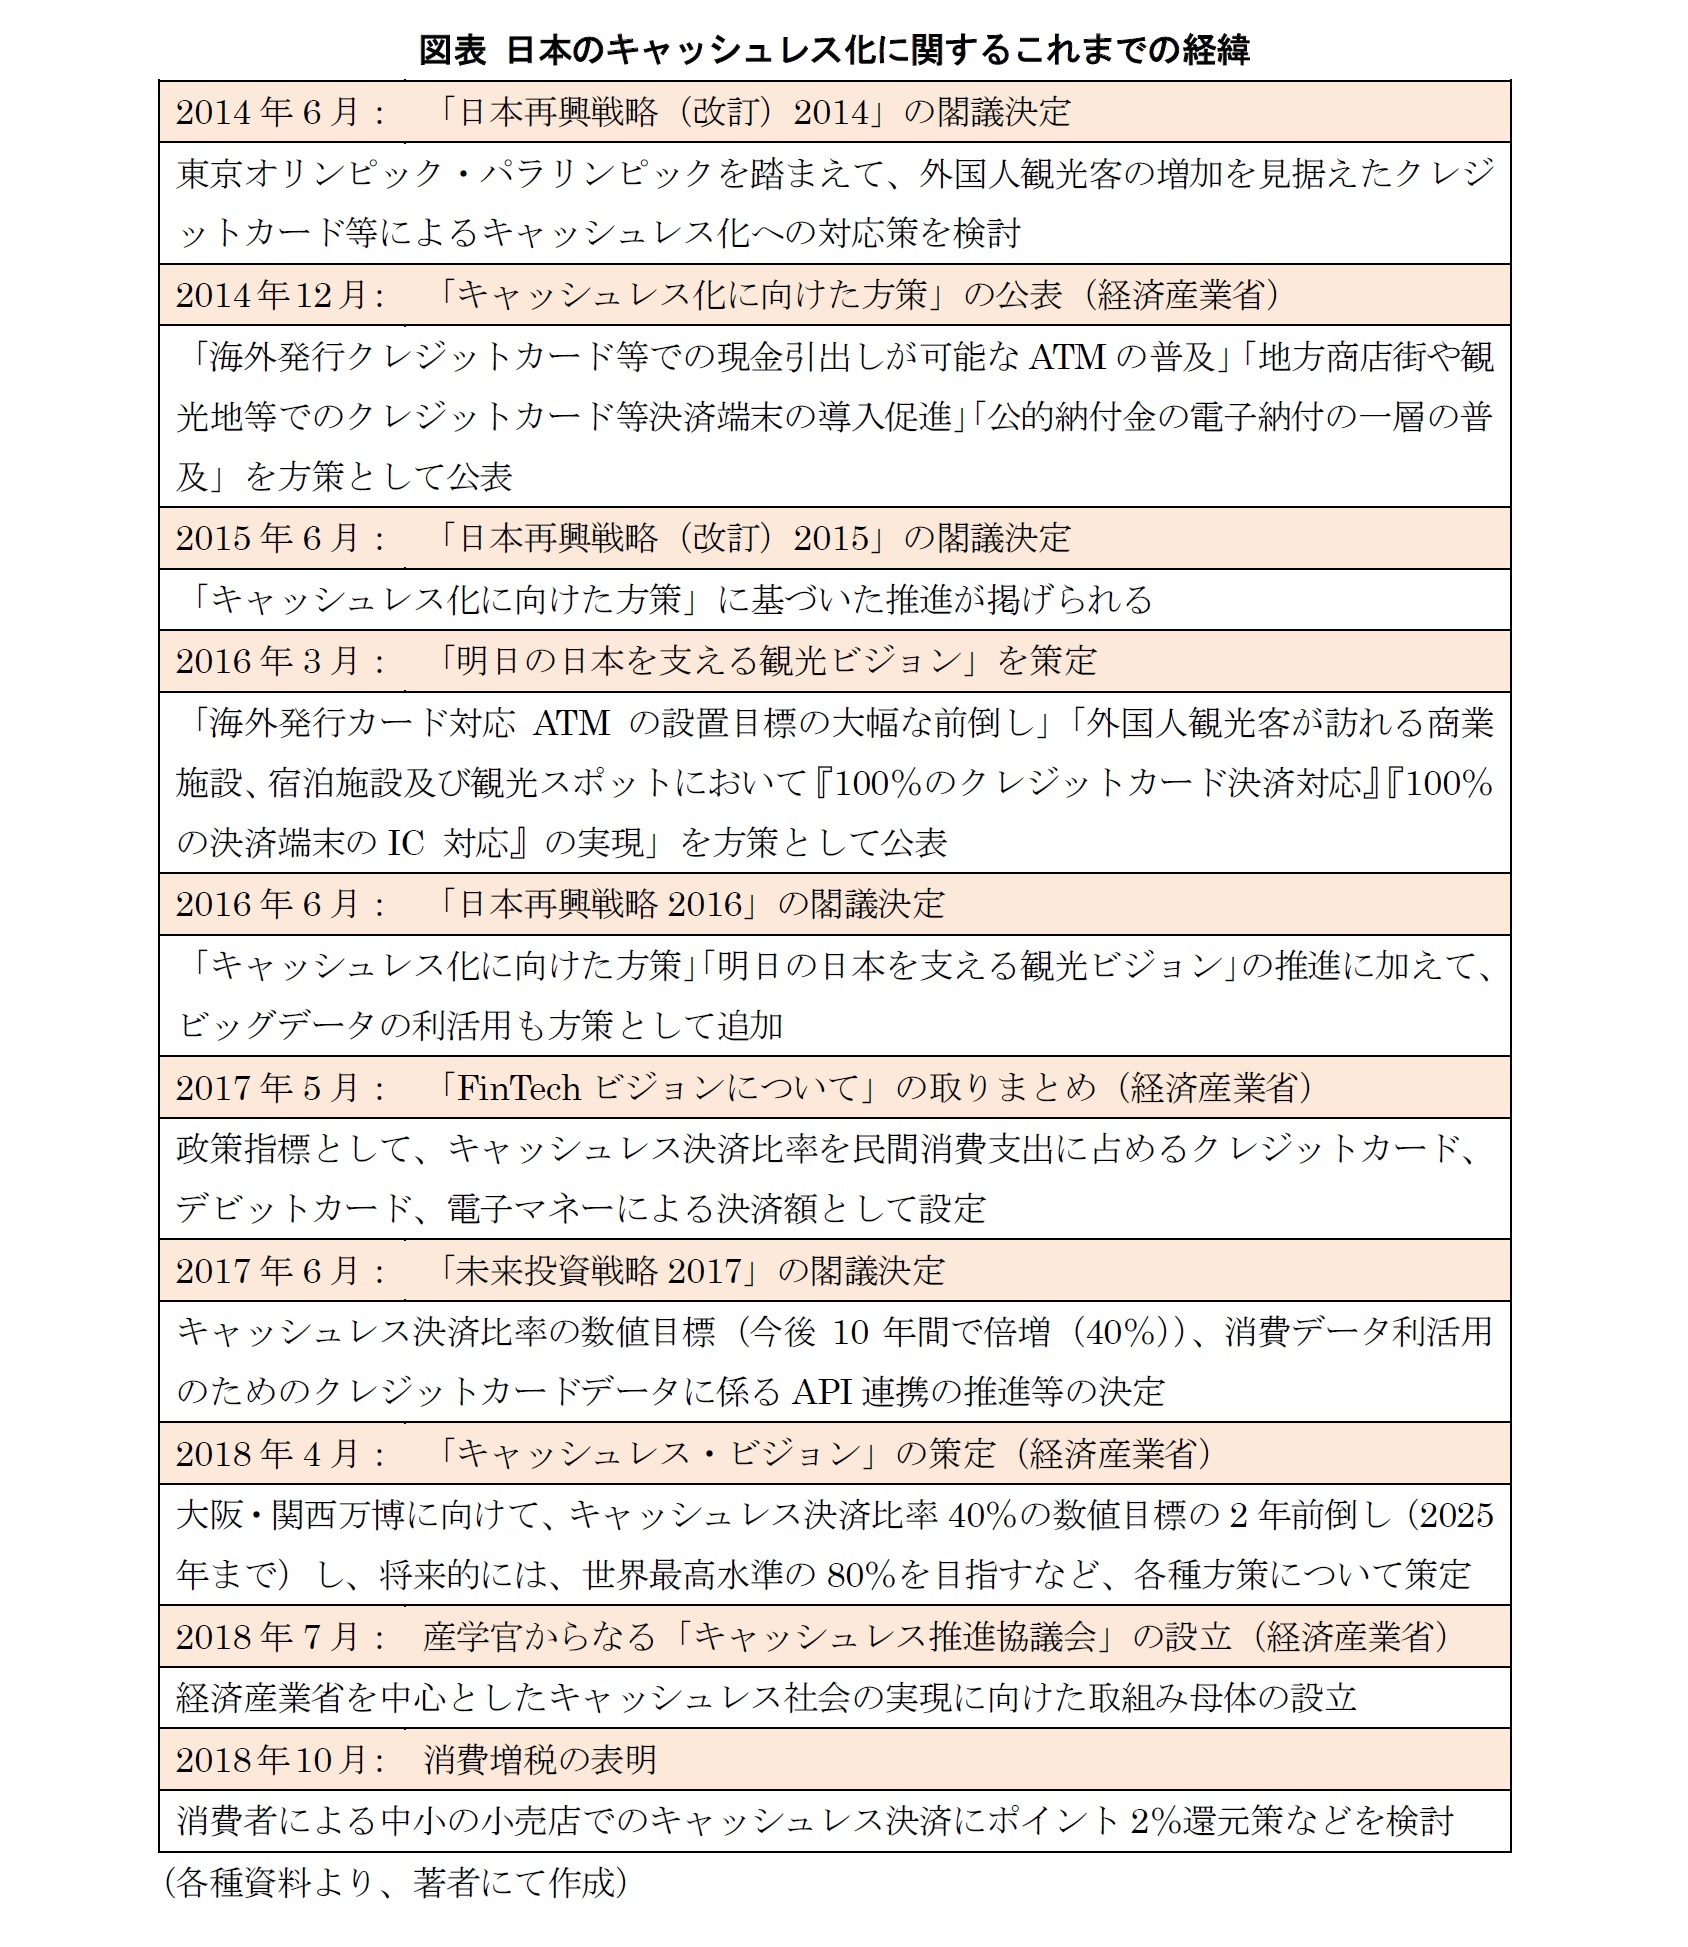 図表 日本のキャッシュレス化に関するこれまでの経緯